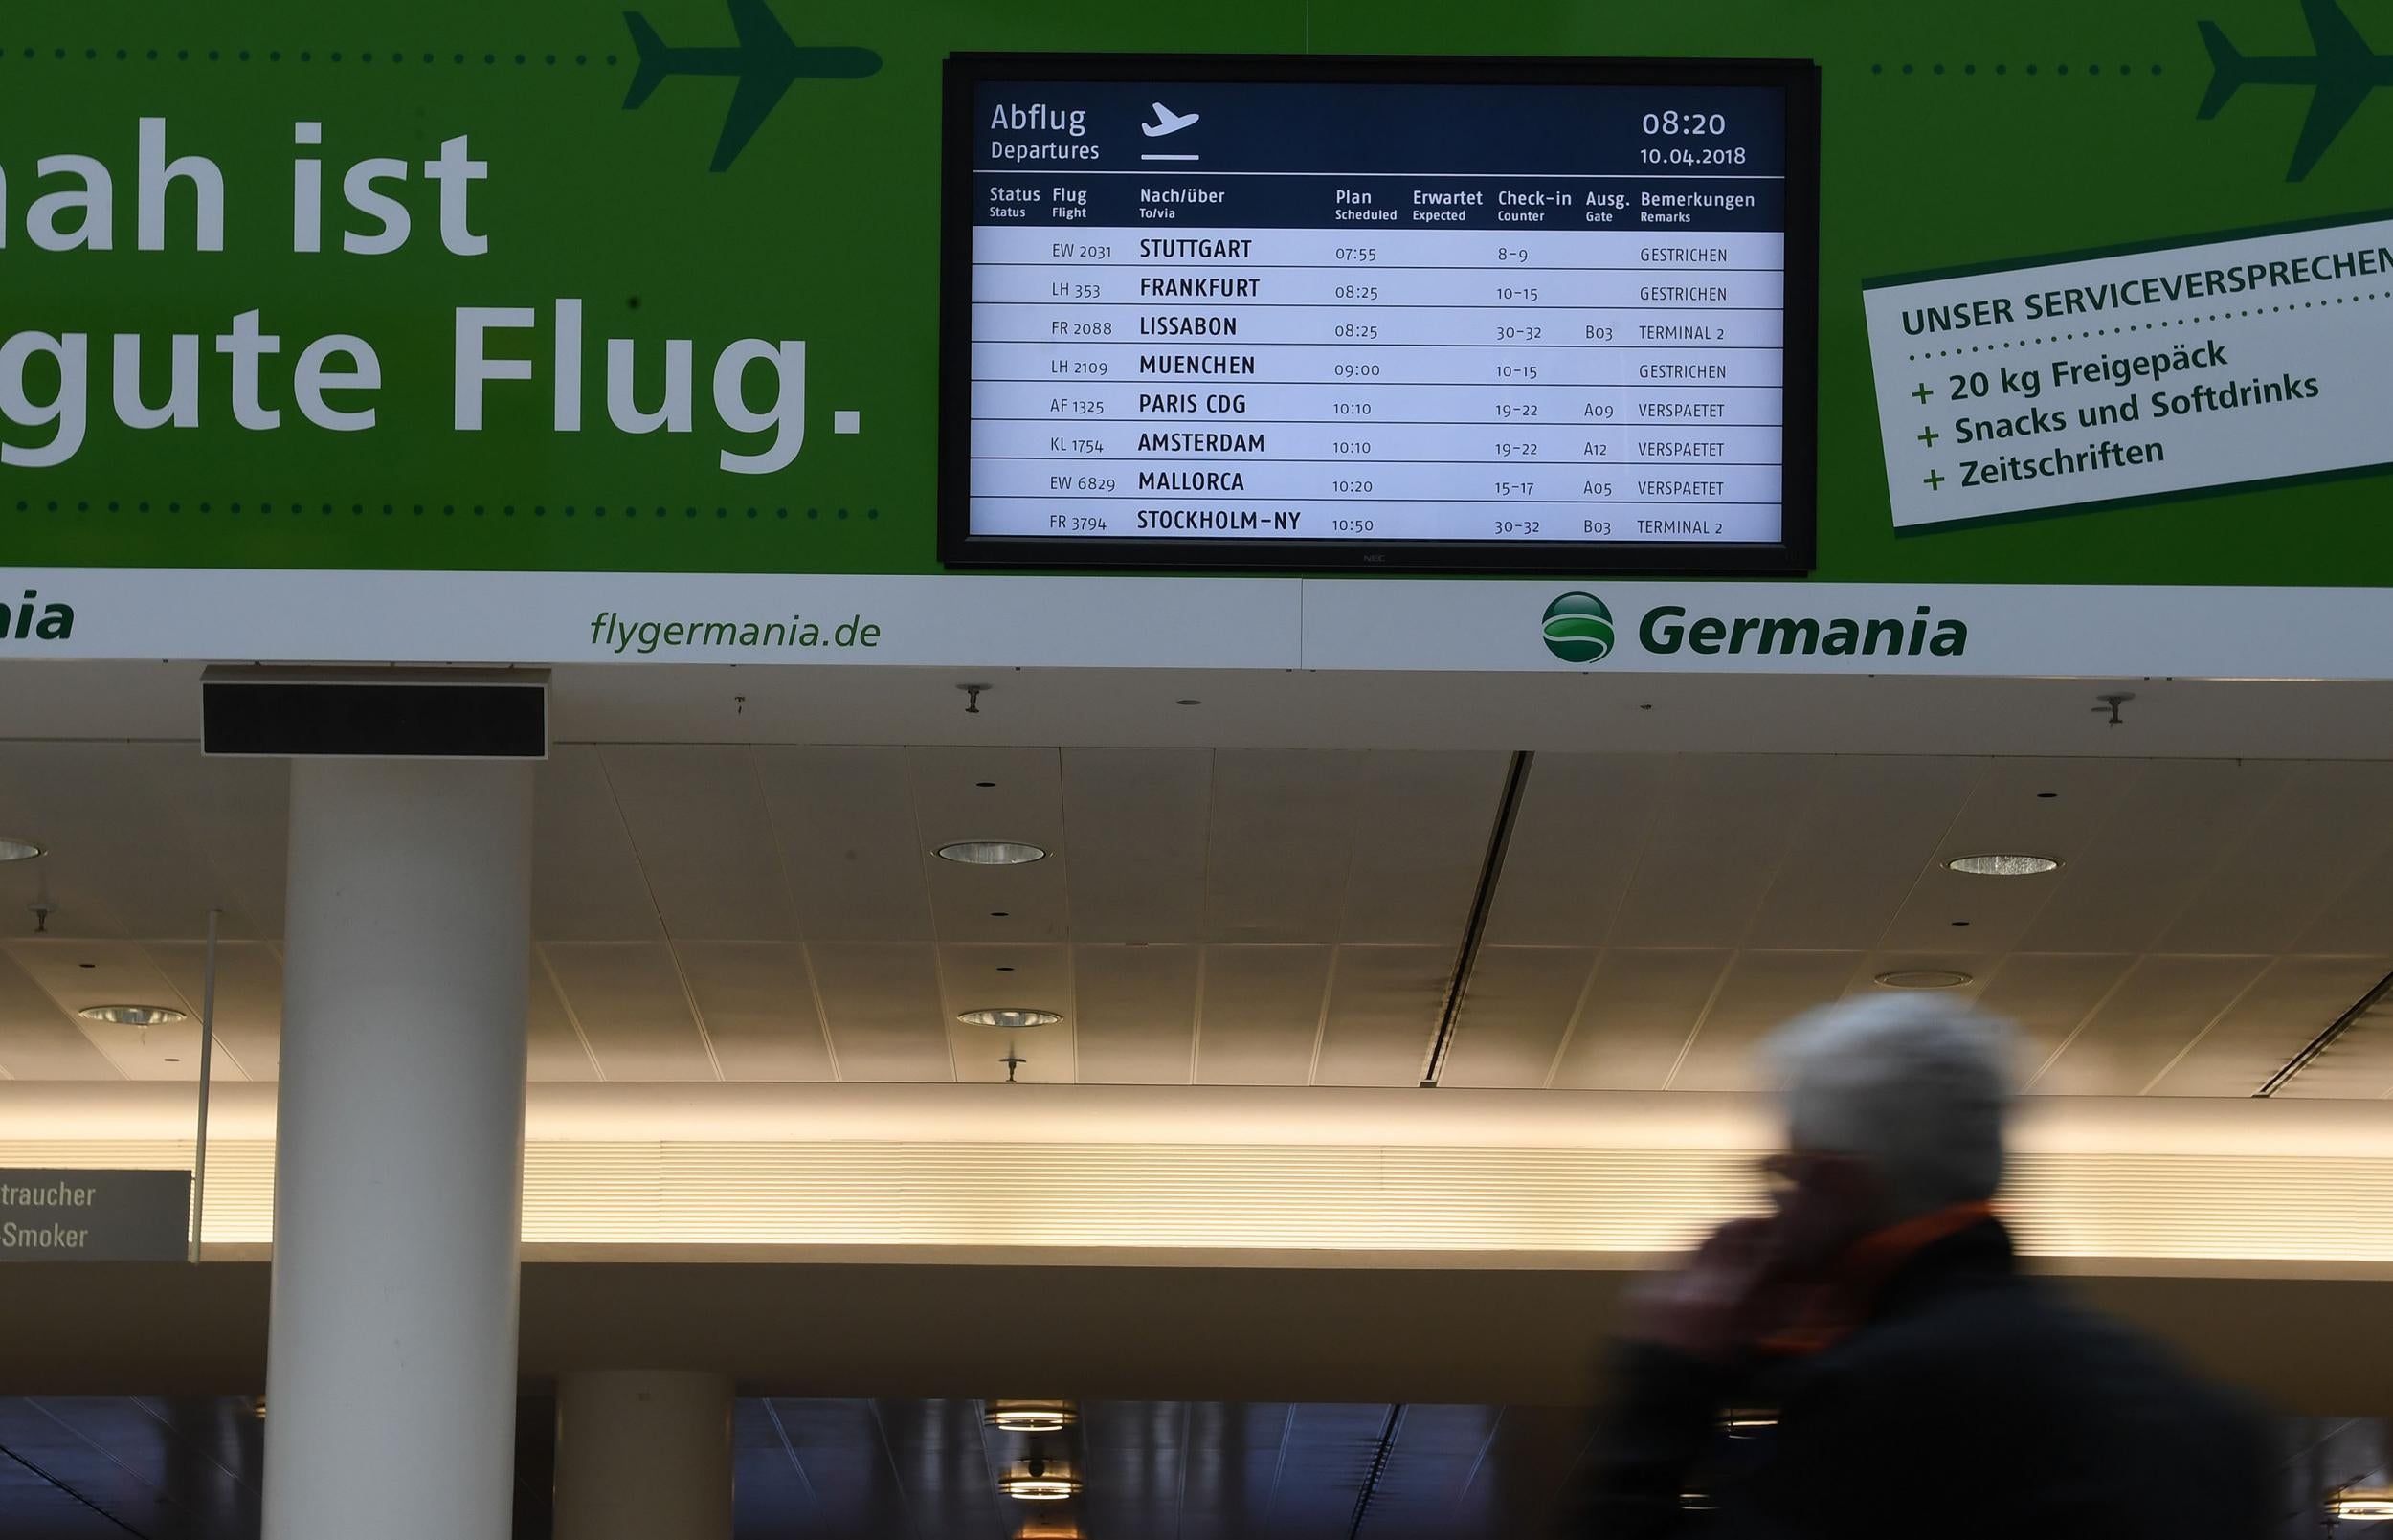 Î‘Ï€Î¿Ï„Î­Î»ÎµÏƒÎ¼Î± ÎµÎ¹ÎºÏŒÎ½Î±Ï‚ Î³Î¹Î± Germany airport strikes to affect 220,000 passengers